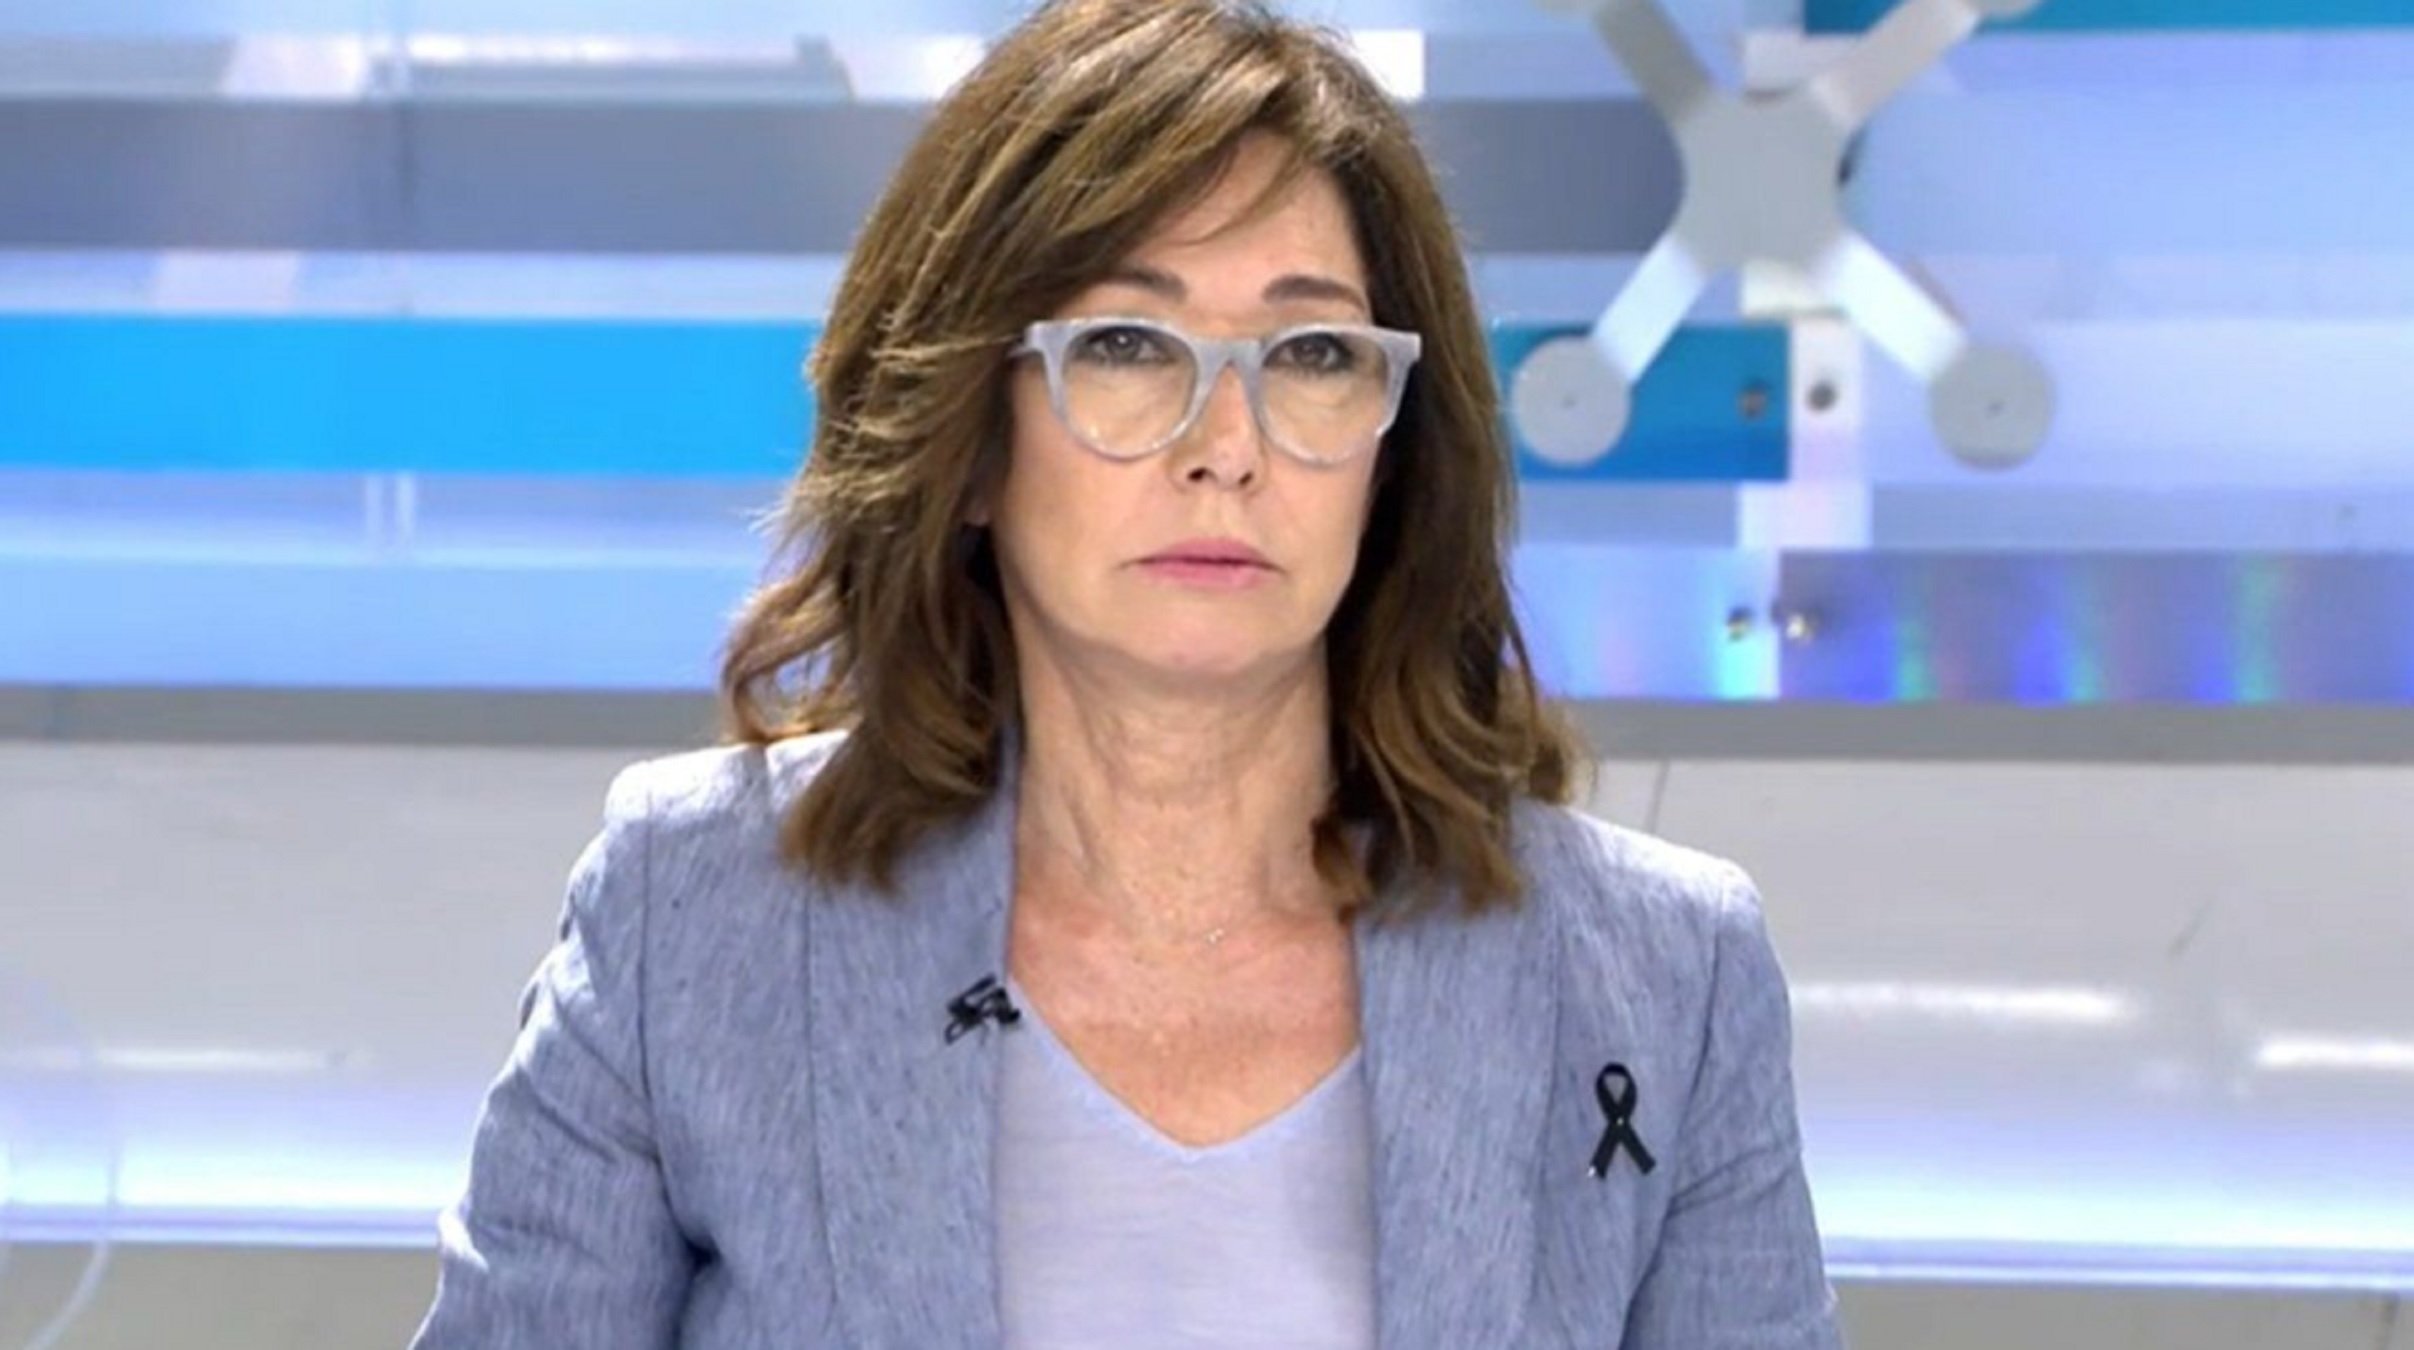 La respuesta (con insulto) de Ana Rosa a presentador catalán al llamarla "anciana" en directo